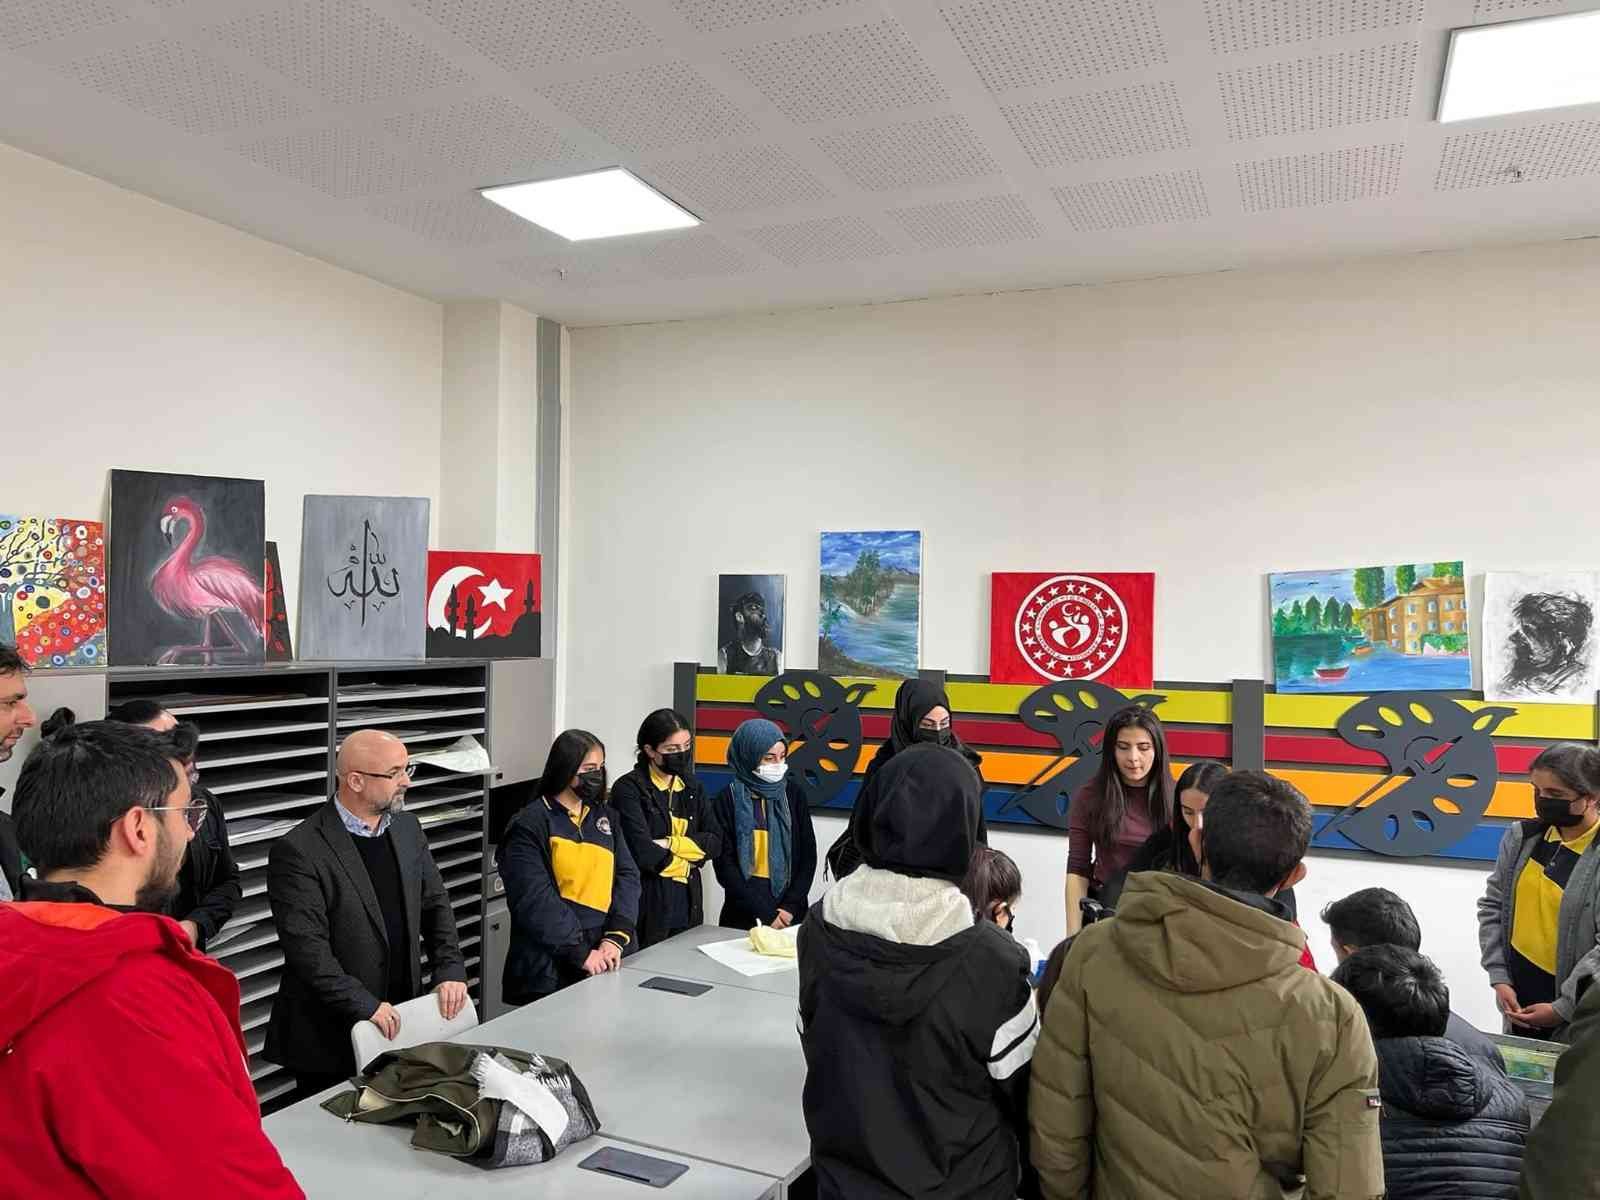 Selim Belediyesi’nden eğitime tam destek #kars